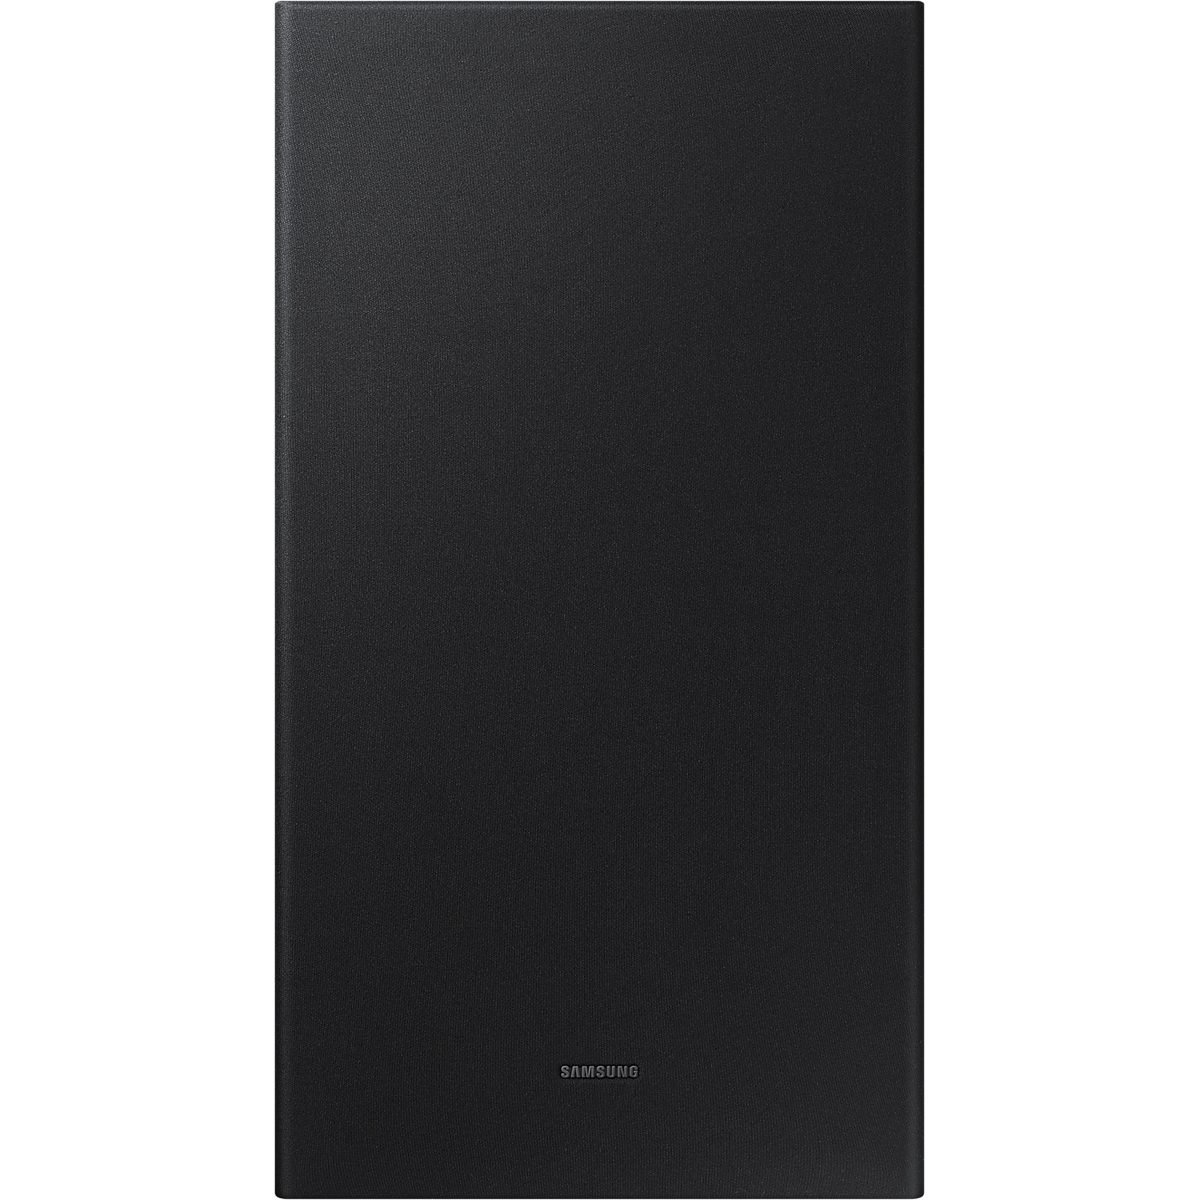 Саундбар Samsung HW-Q600C, черный